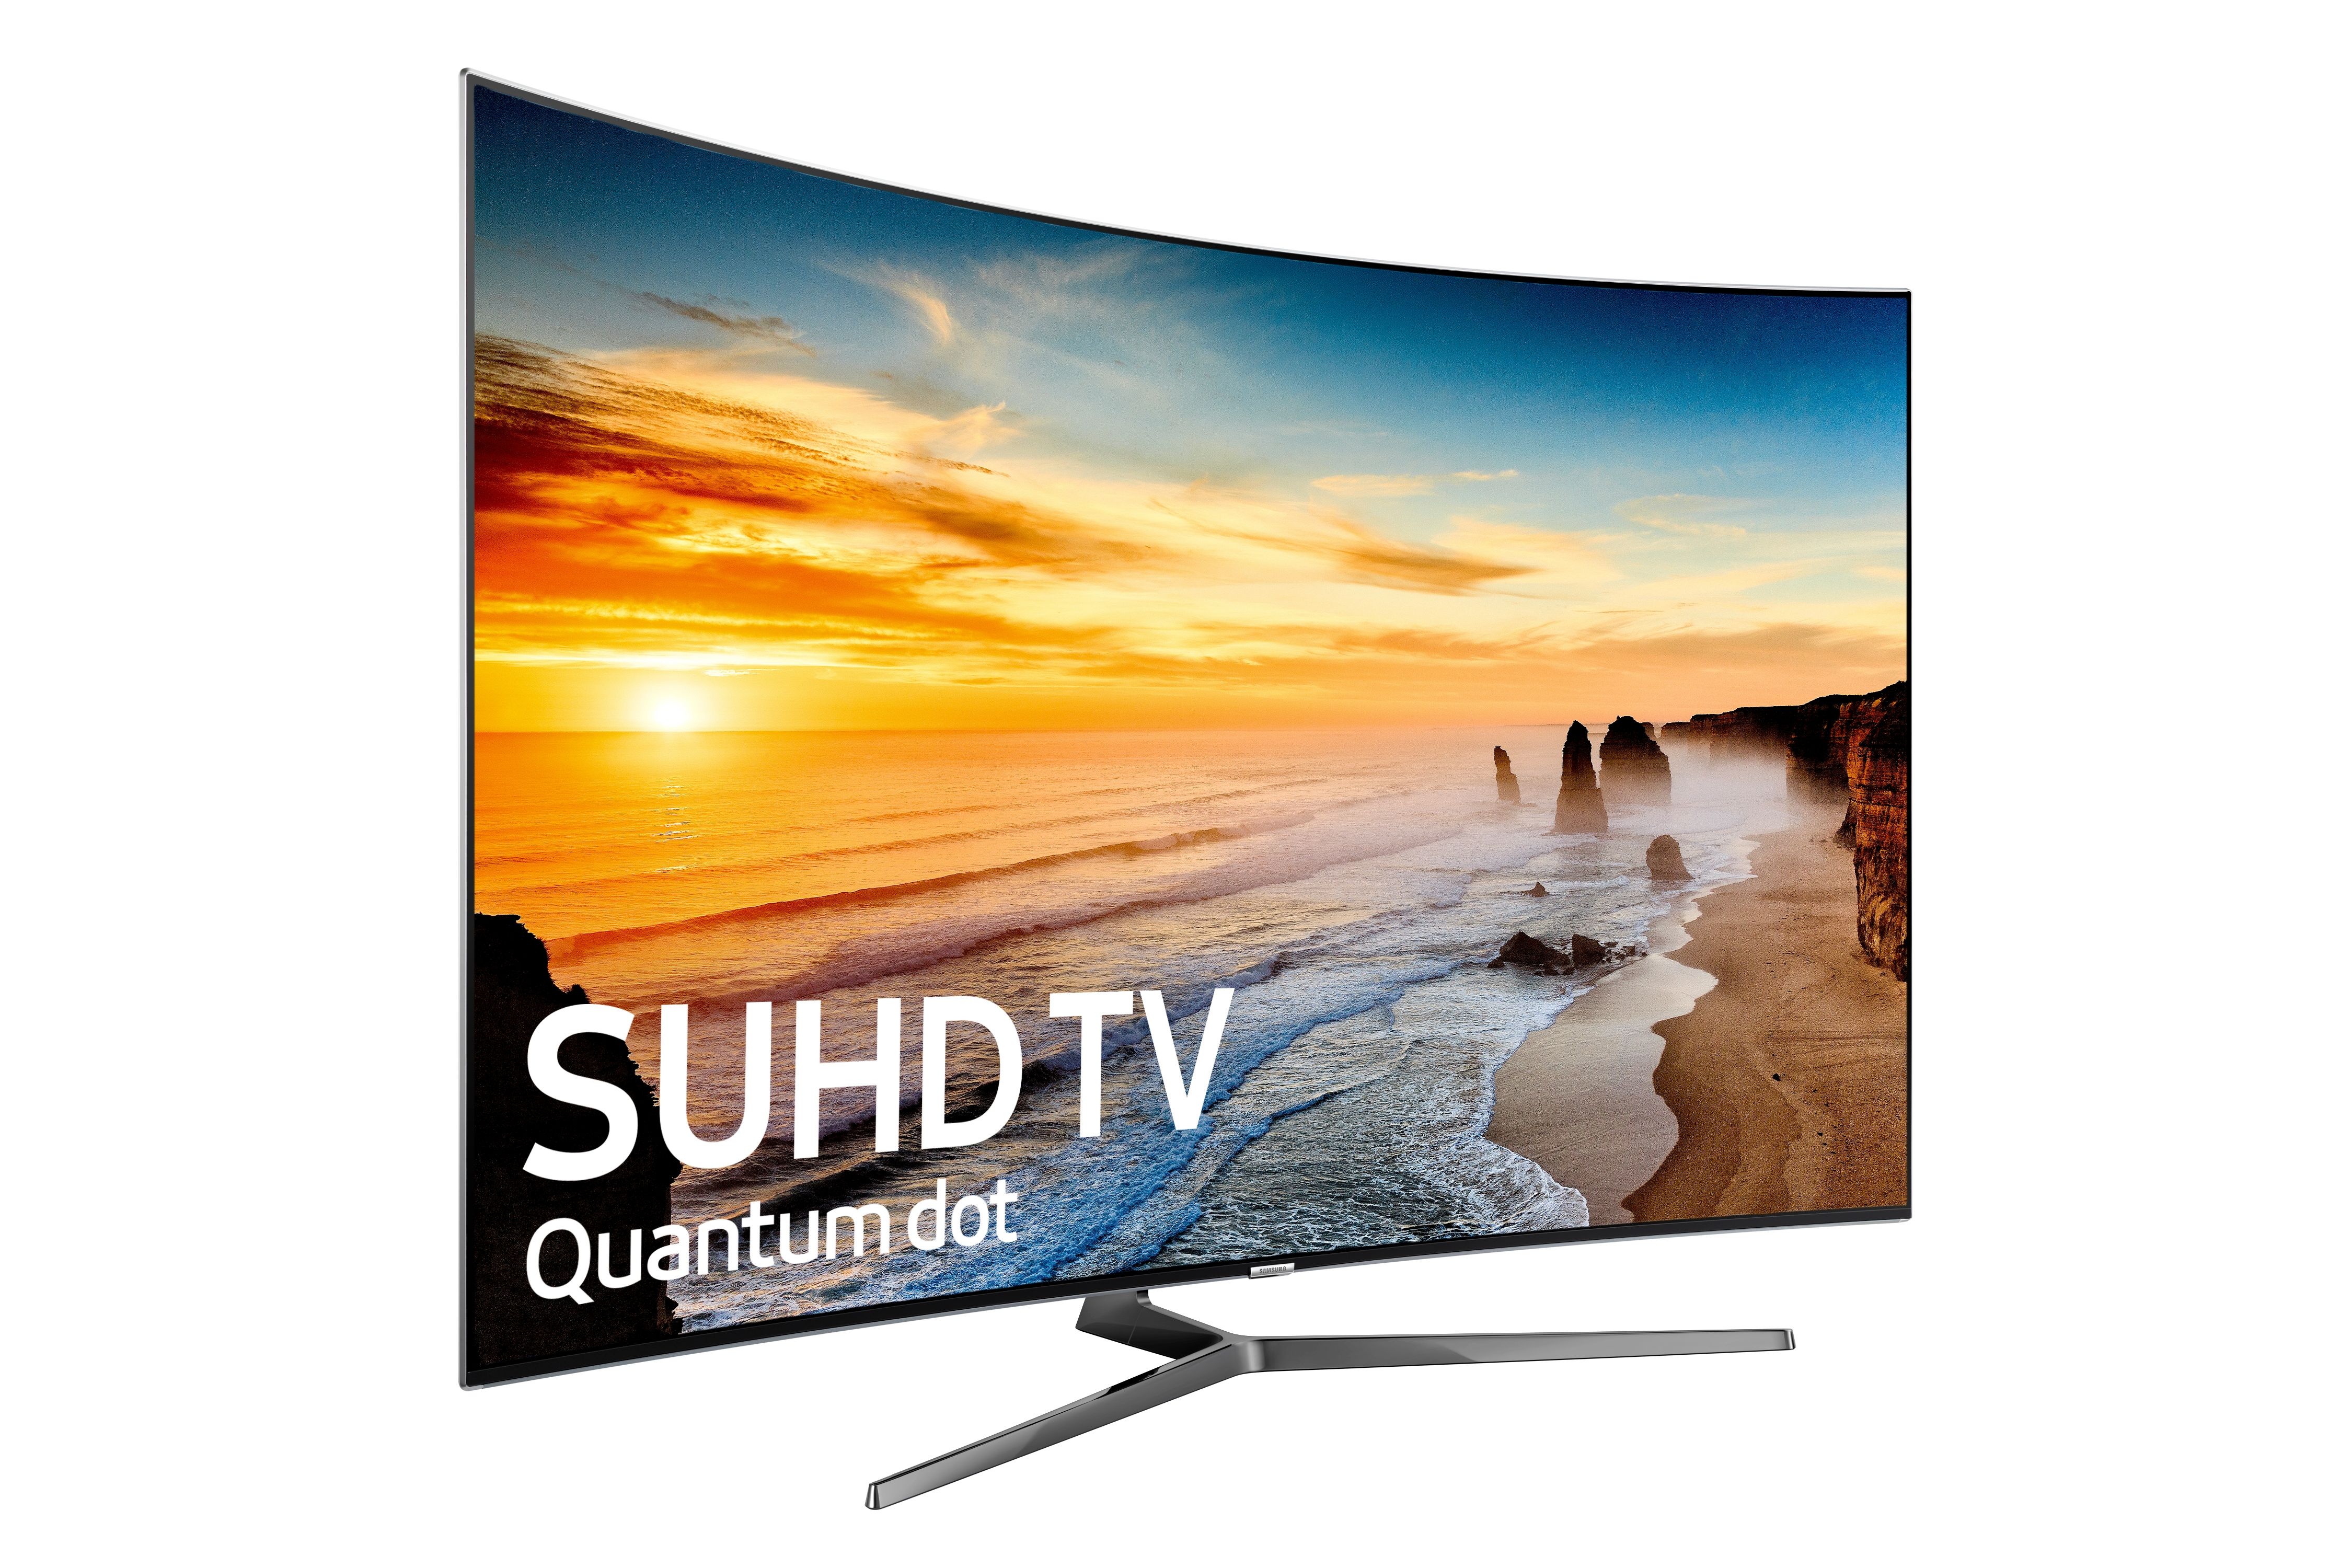 65” Class KS950D 4K SUHD TV TVs - UN65KS950DFXZA | Samsung US